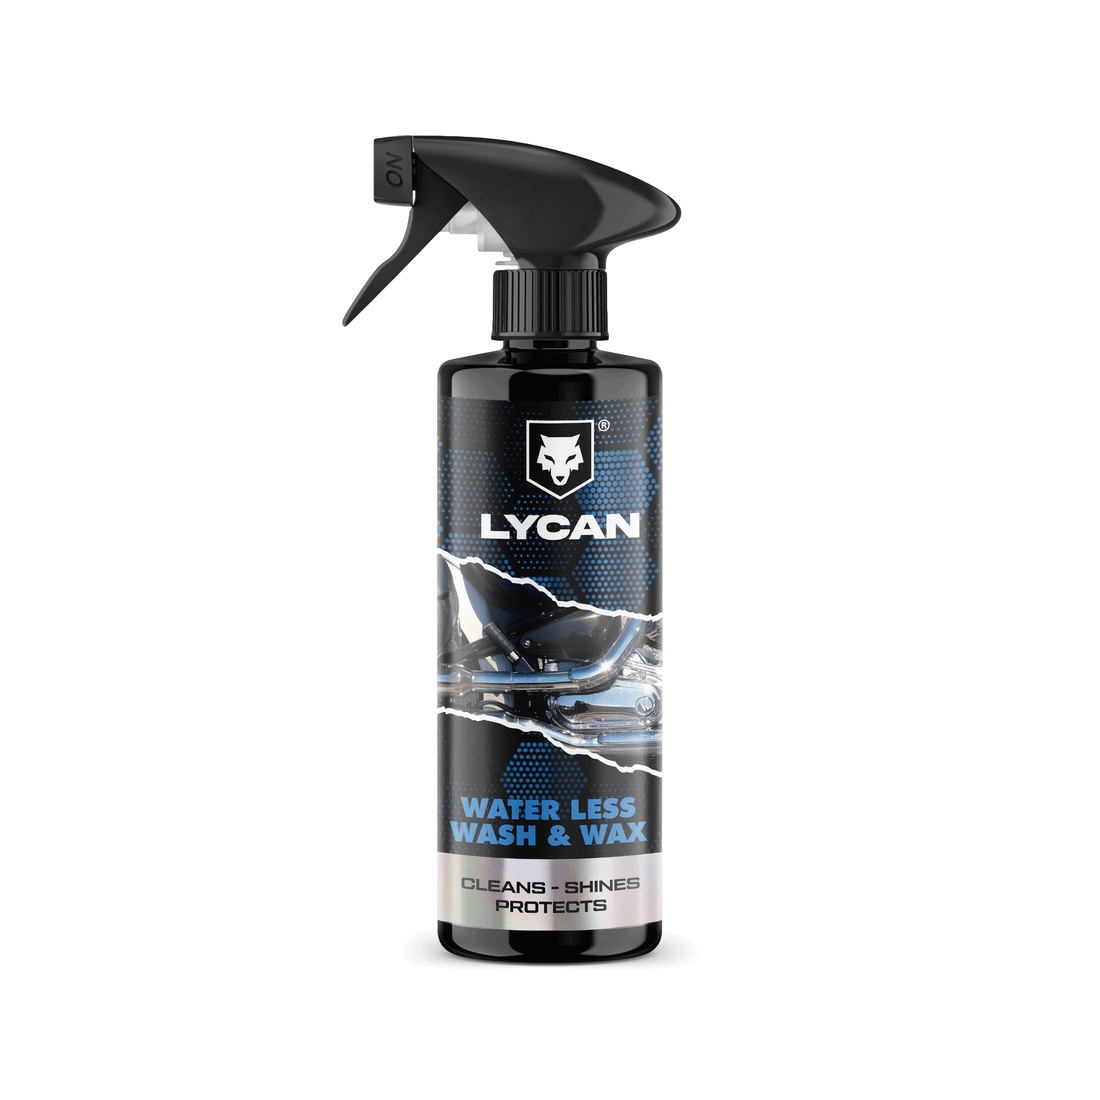 Waterless Wash & Wax – Lycanride